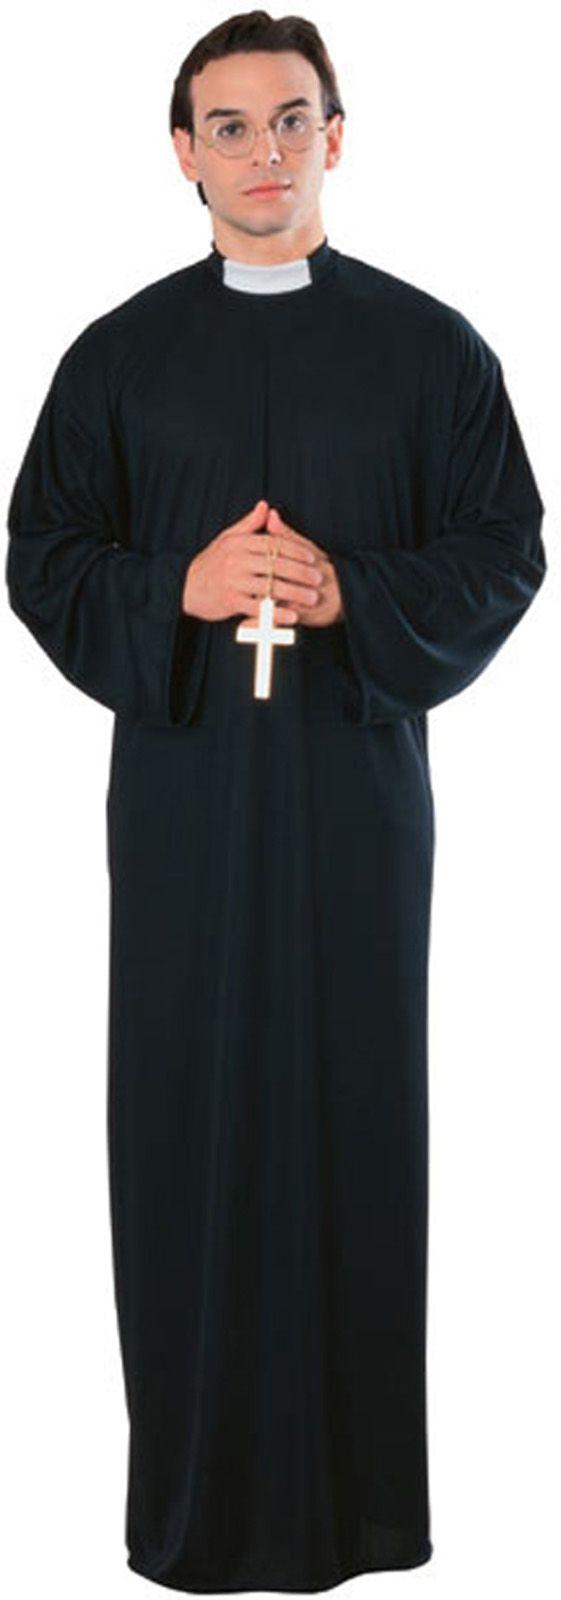 Платье священника. Костюм ряса ксендза. Католический подрясник. Сутана католического священника. Ряса священника монаха.